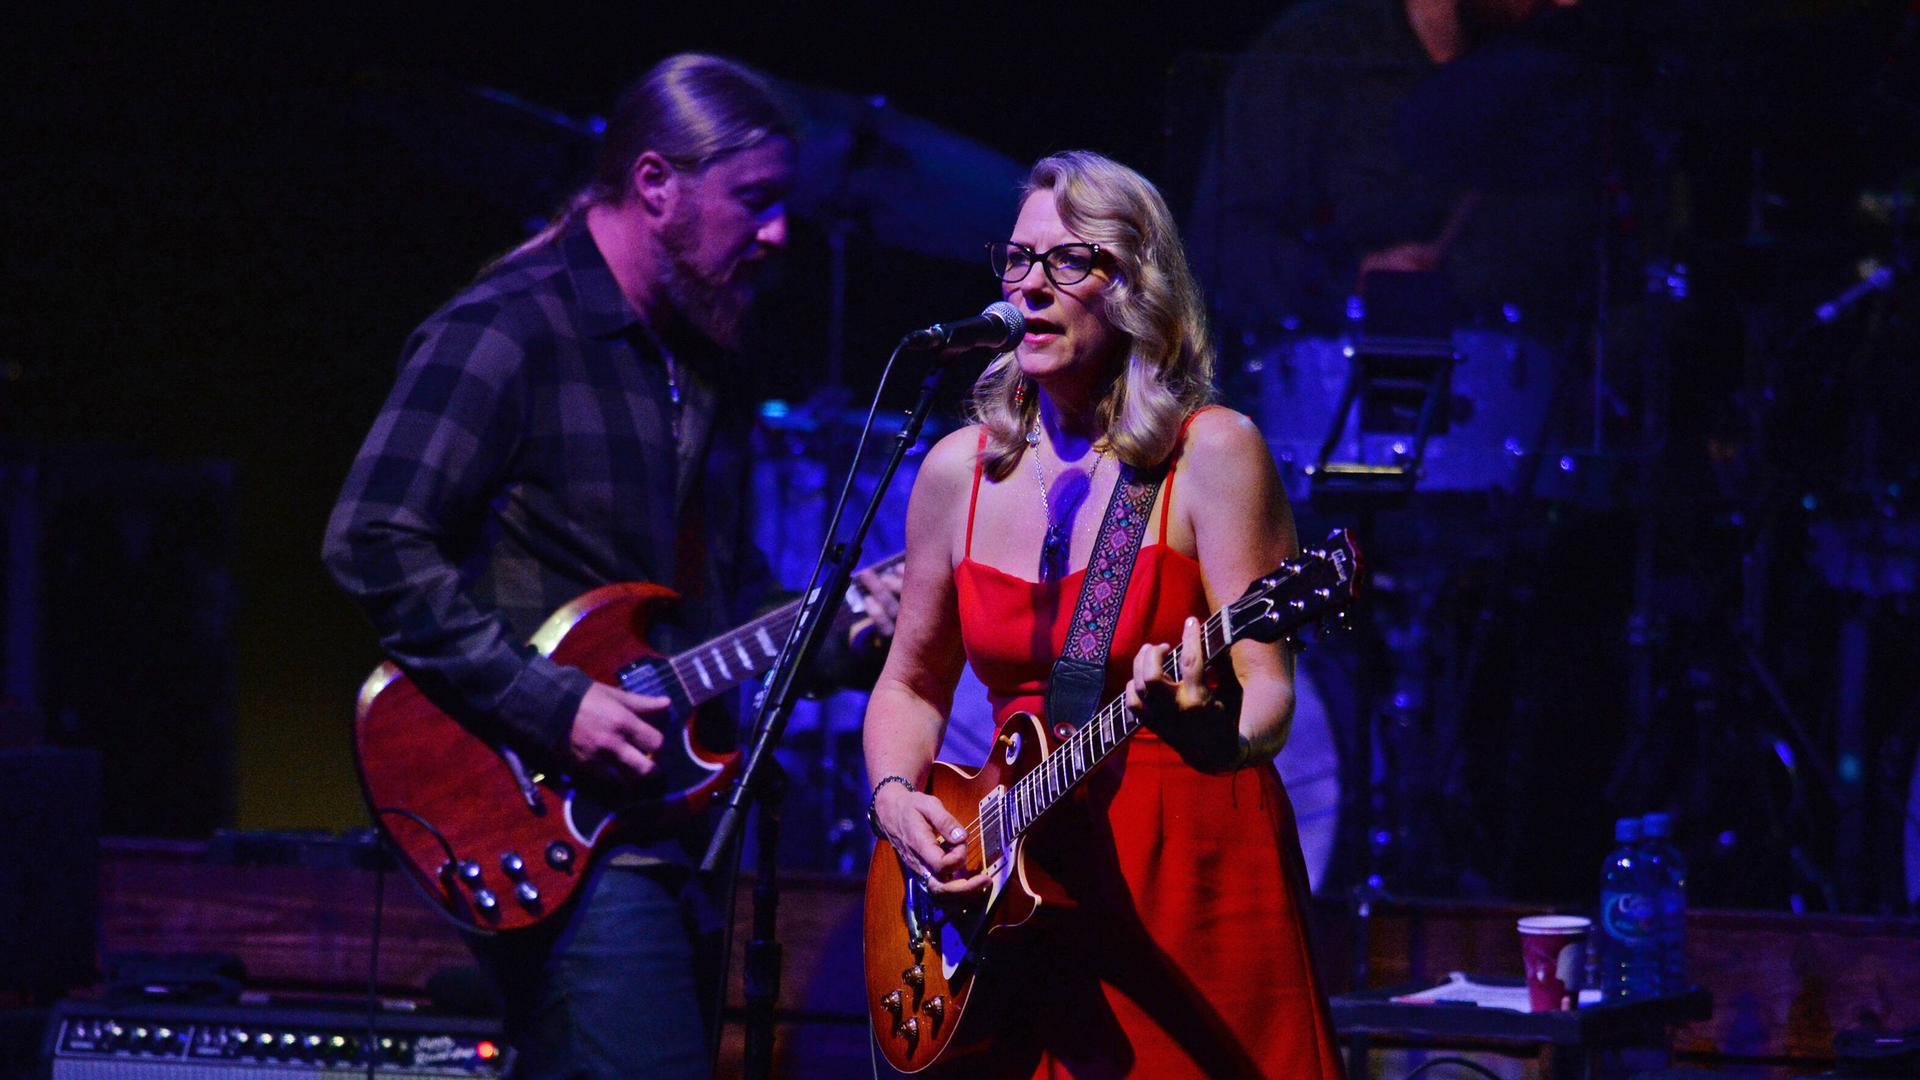 Eine Frau in rotem Kleid und Gitarre singt vor einem Mikrofon. Ein Mann mit Gitarre und Vollbart steht hinter ihr und spielt ebenso.